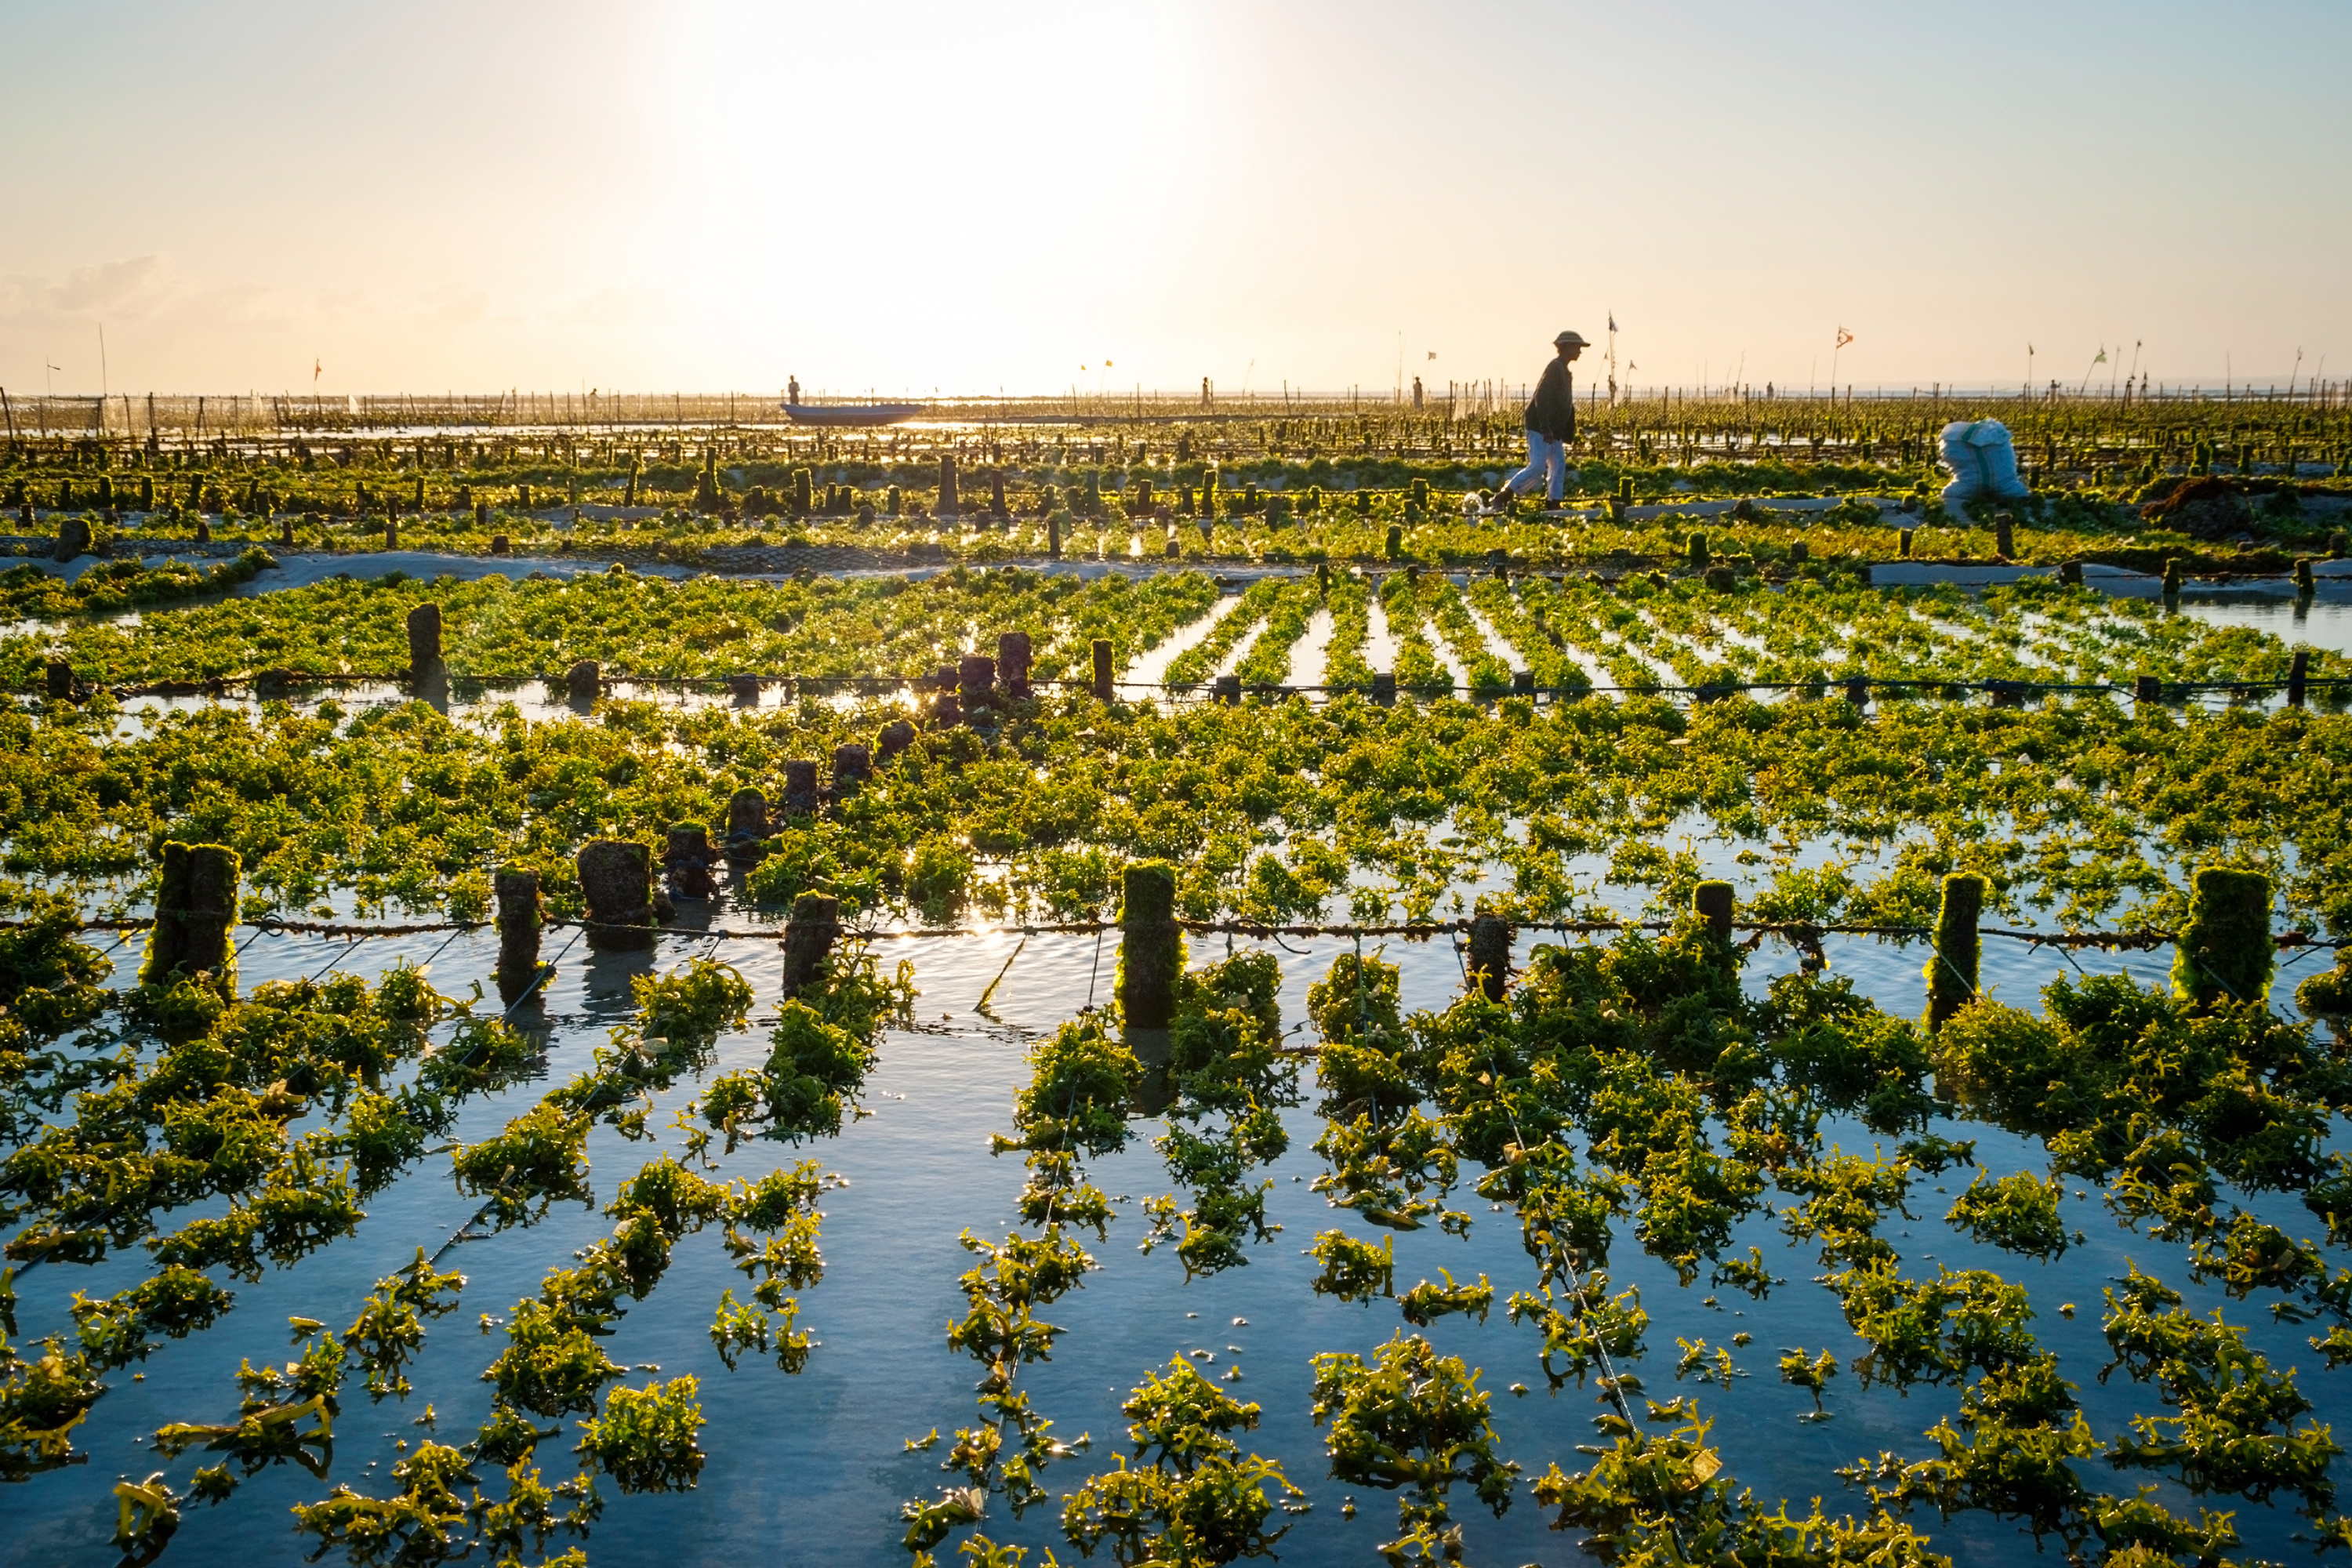 An algae farm field in Indonesia